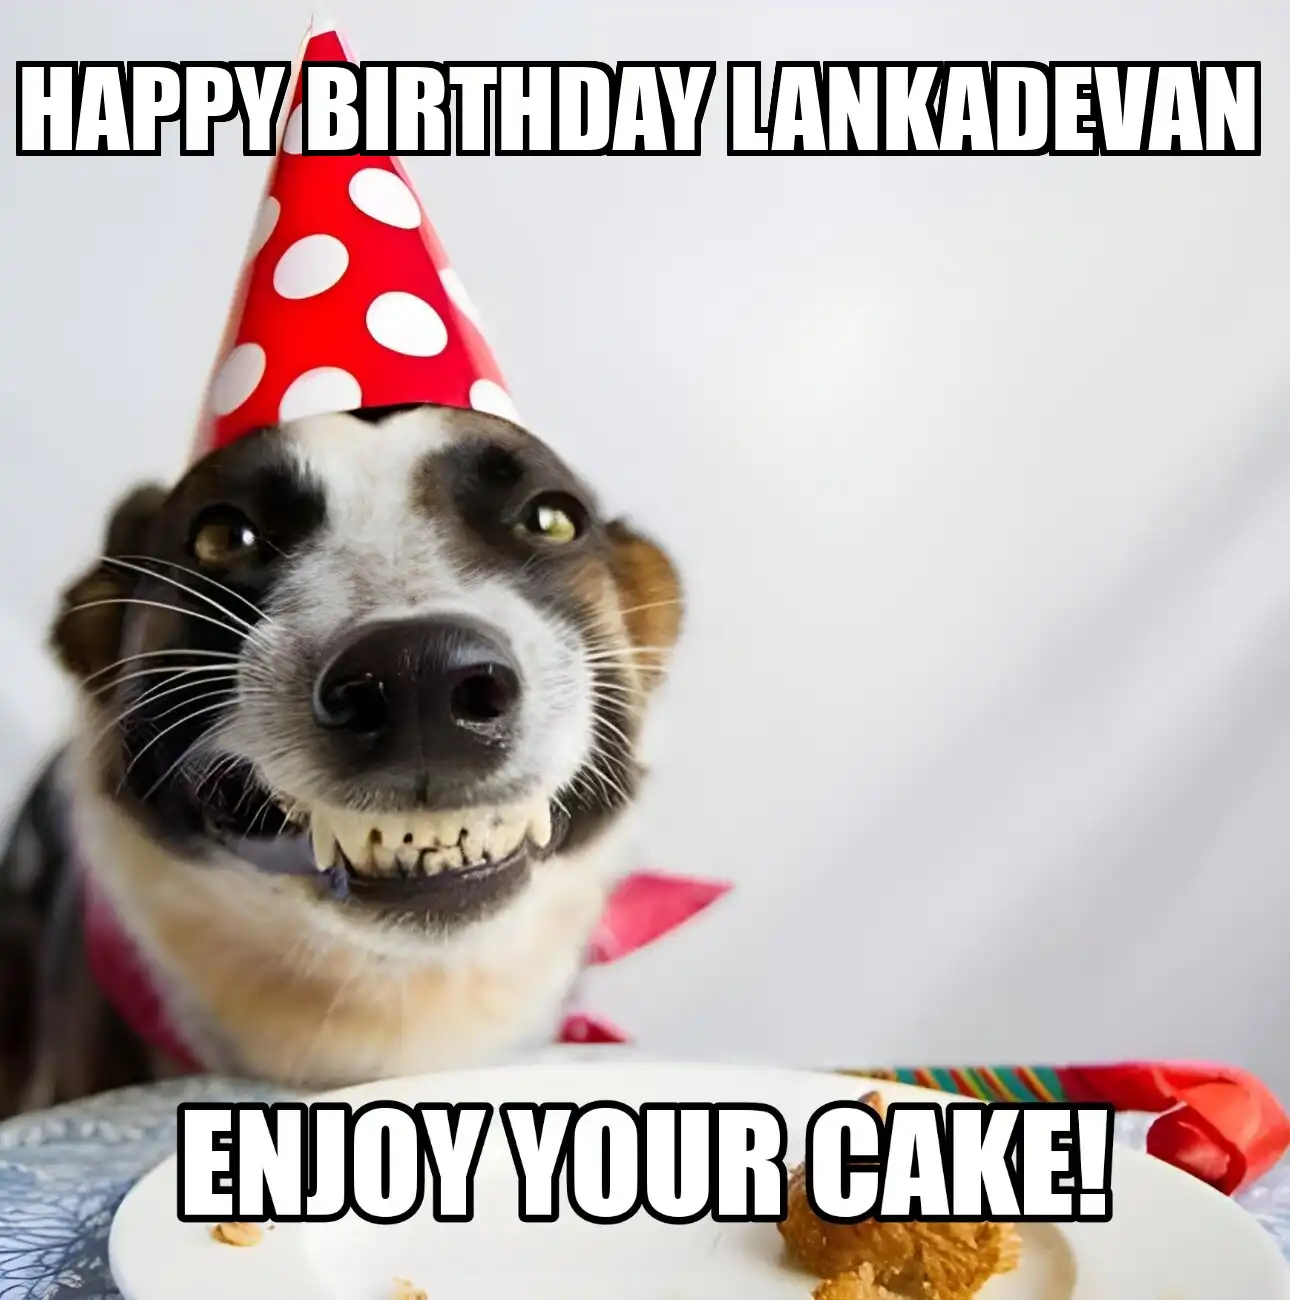 Happy Birthday Lankadevan Enjoy Your Cake Dog Meme